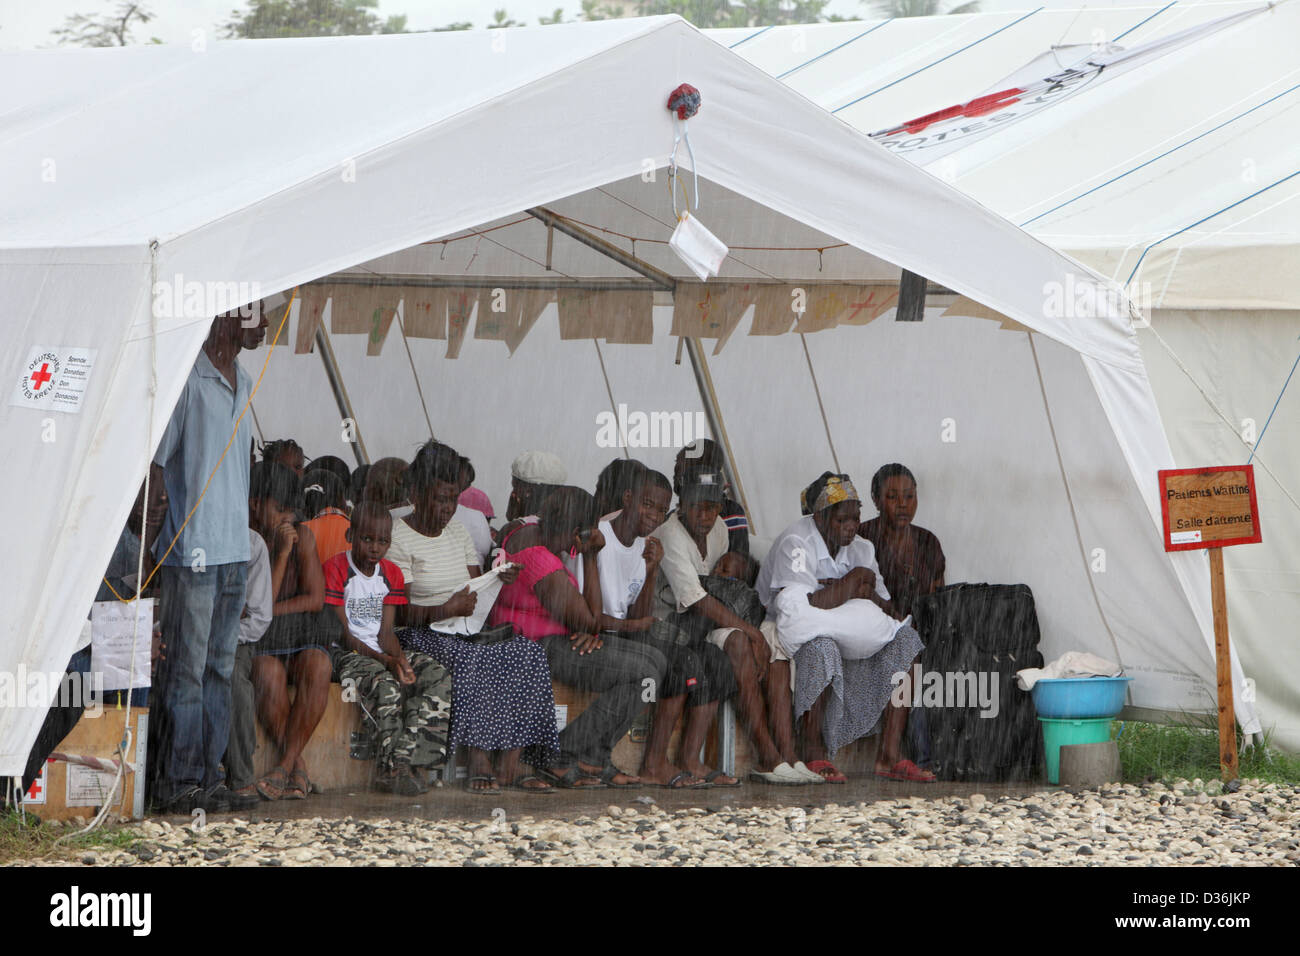 carrefour-haiti-los-pacientes-se-sientan-en-la-lluvia-torrencial-en-la-carpa-esperando-hospitales-de-campo-d36jkp.jpg